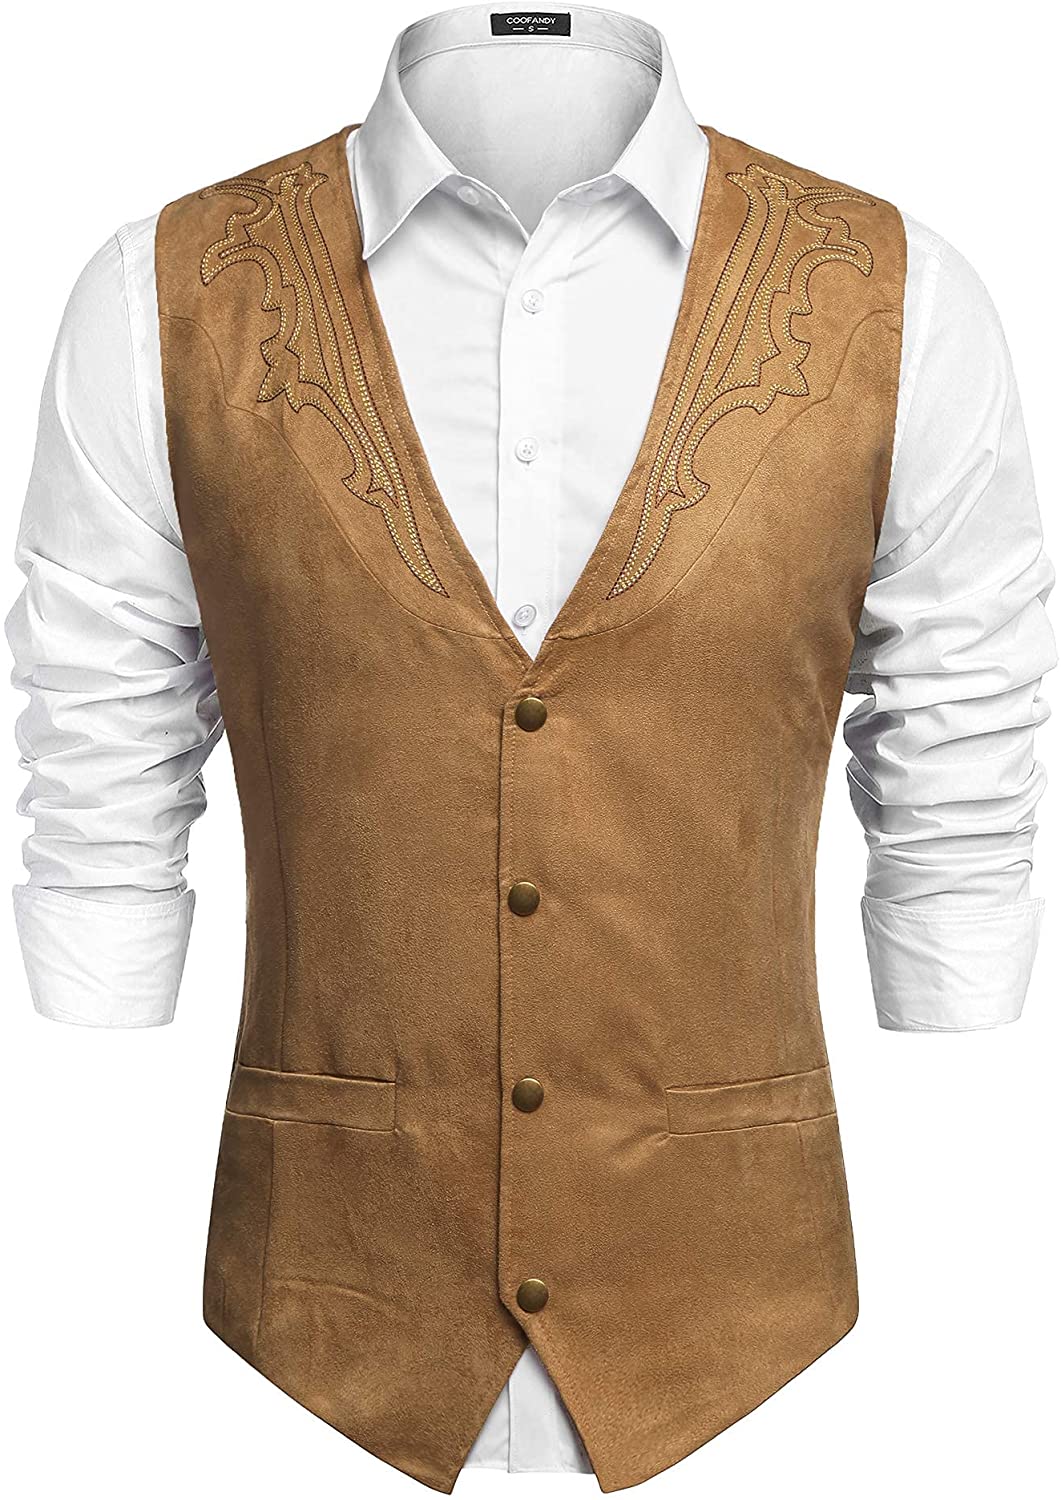 COOFANDY Men's Suede Leather Suit Vest Casual Western Vest Jacket Slim Fit Vest Waistcoat 